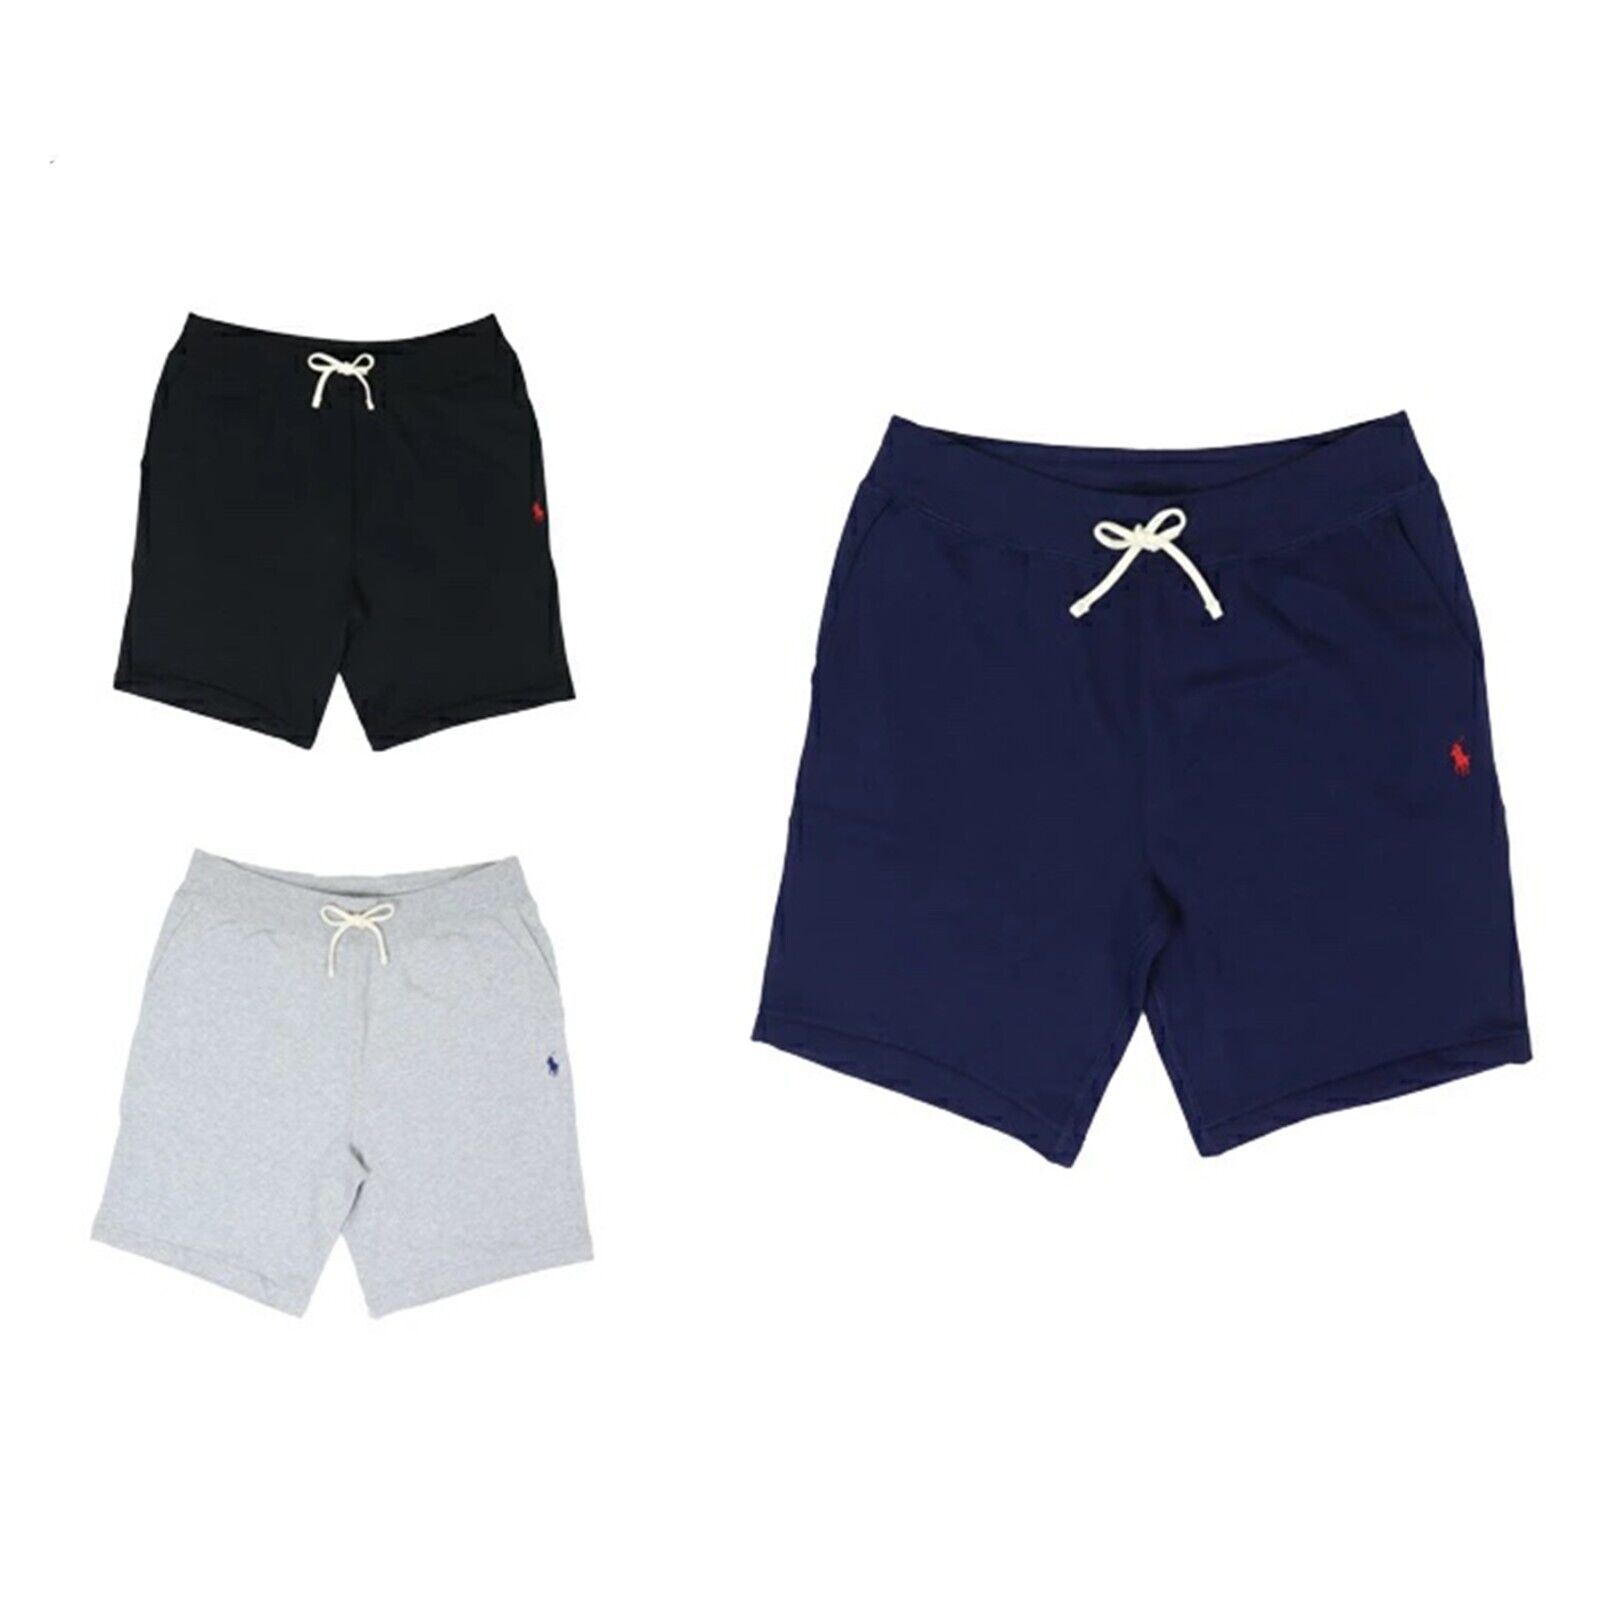 Мужские однотонные спортивные шорты Polo Ralph Lauren, короткие брюки с пони — 3 цвета —